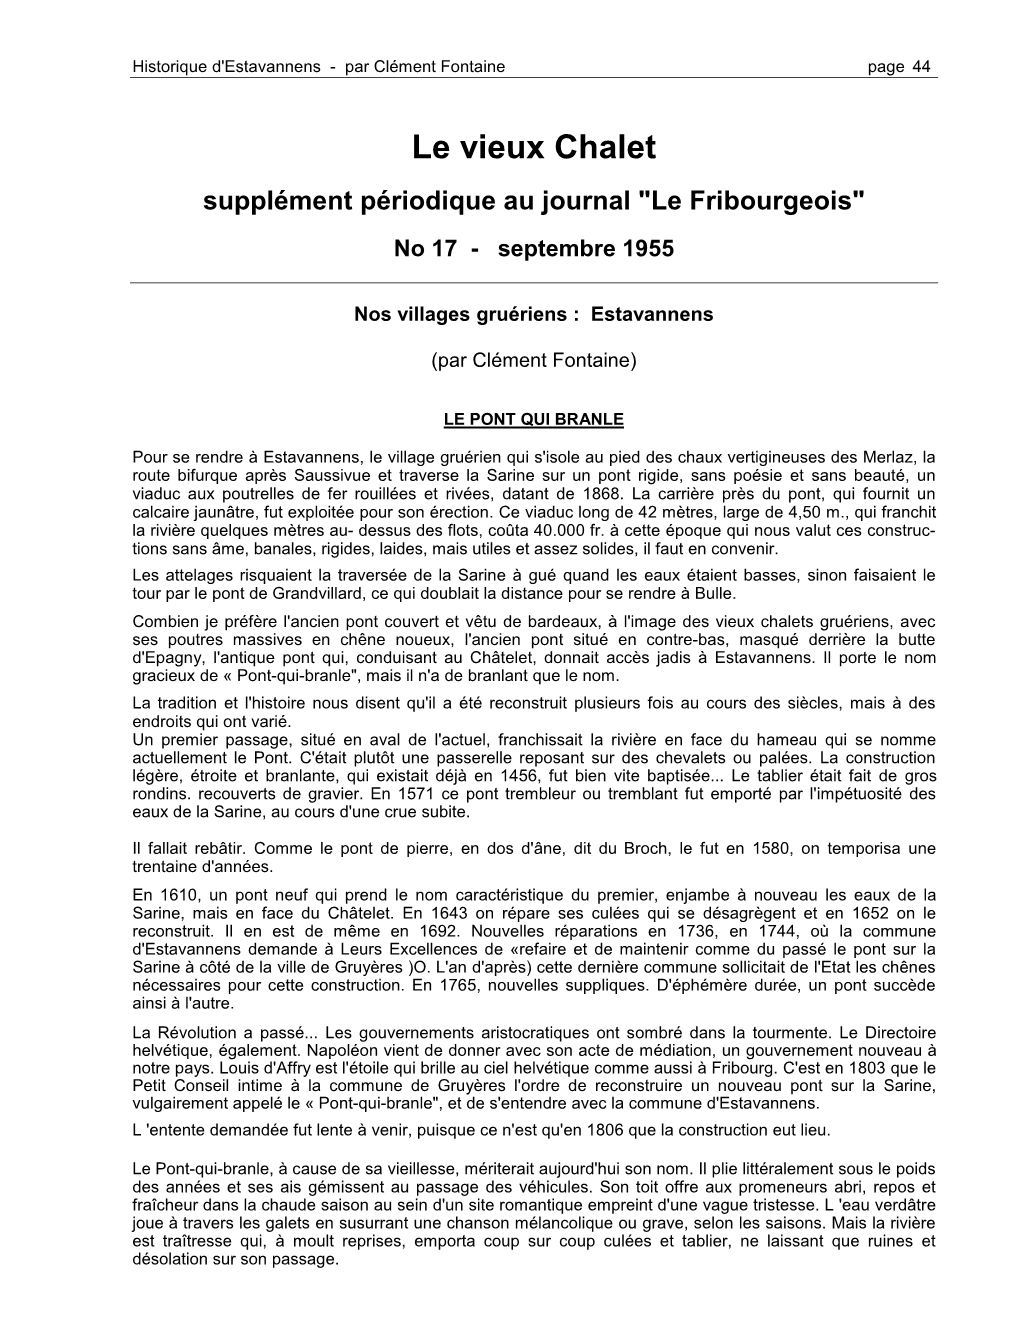 Le Vieux Chalet Supplément Périodique Au Journal "Le Fribourgeois" No 17 - Septembre 1955